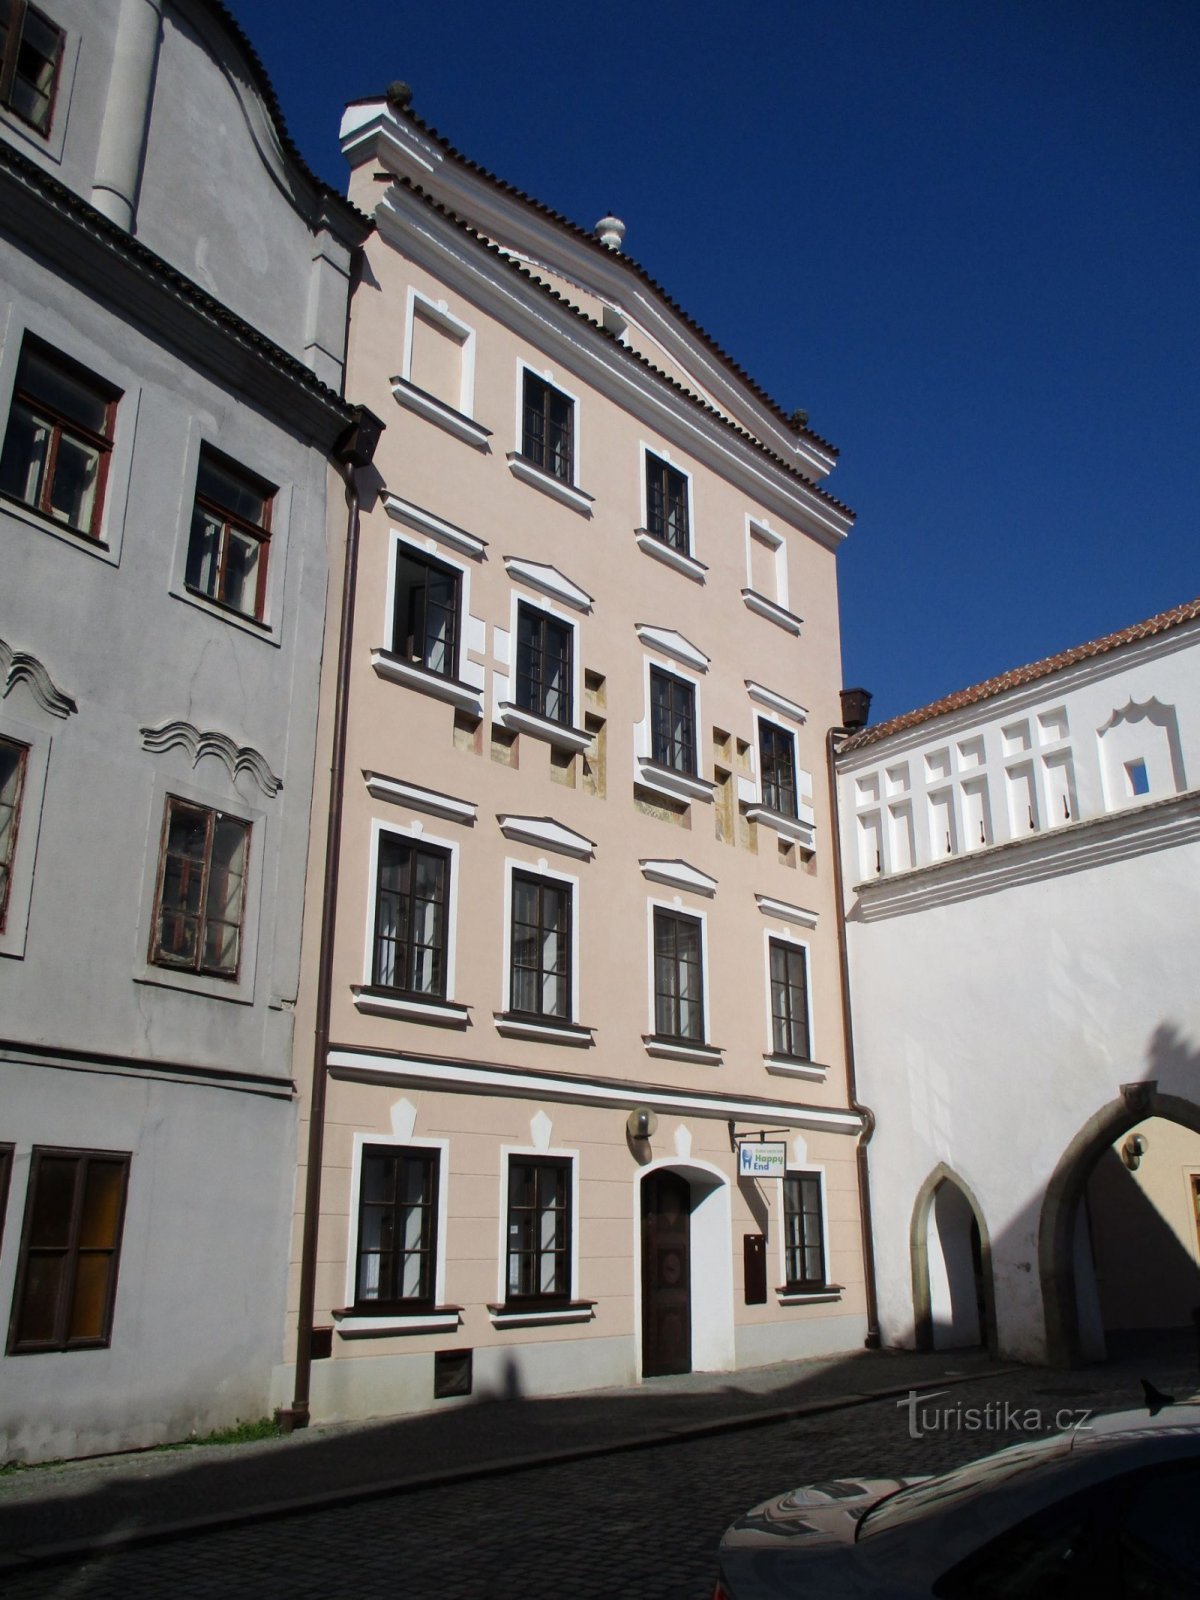 21. számú kastély (Pardubice, 27.4.2021.)